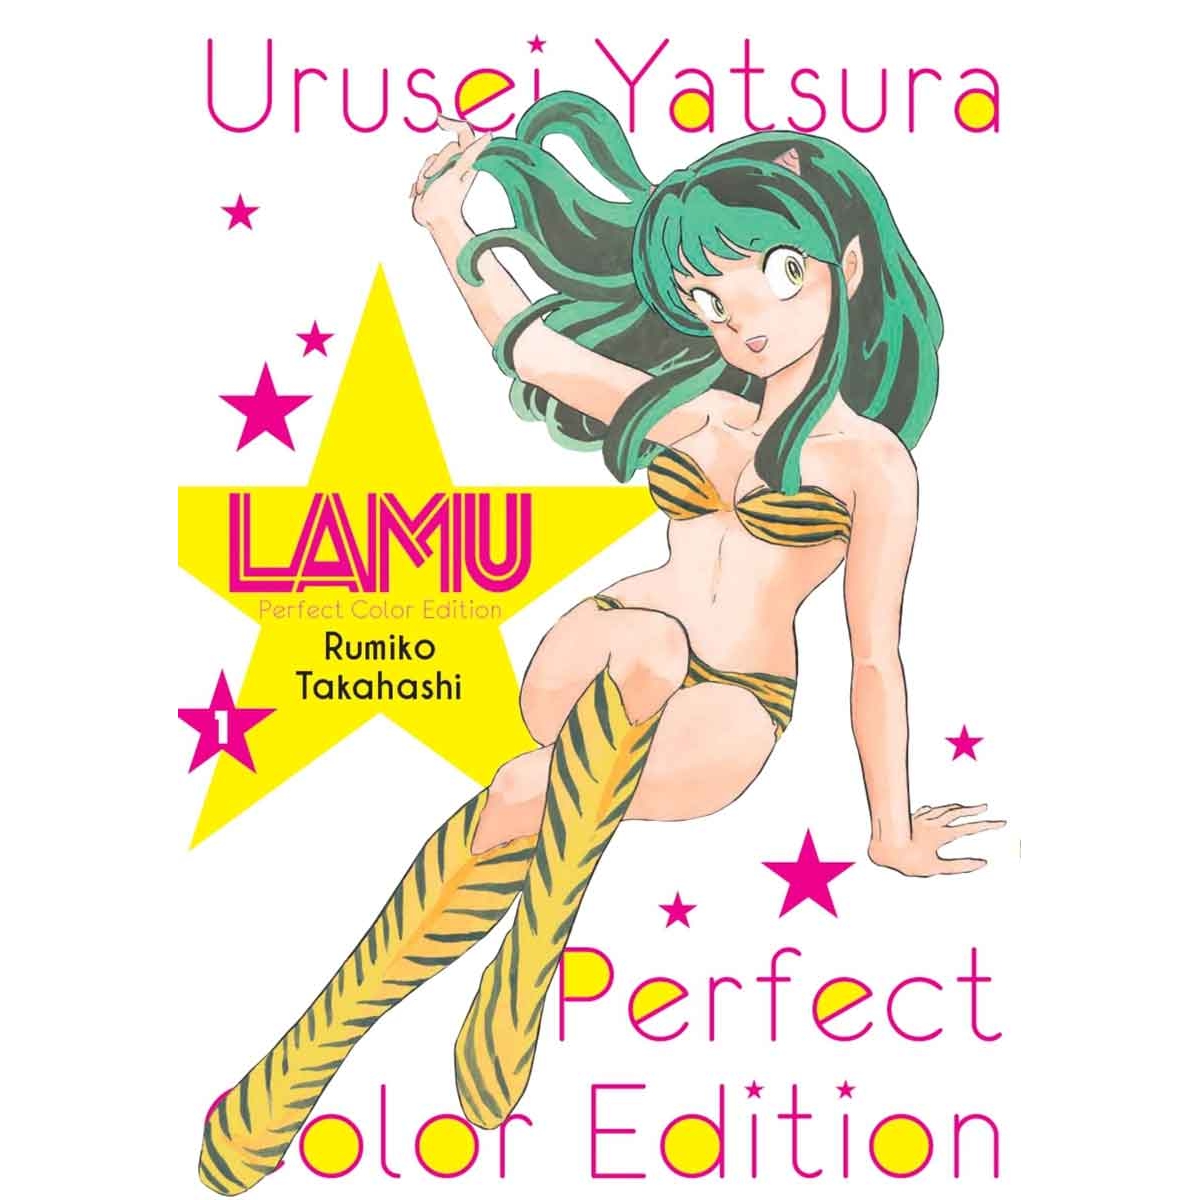 Lamu Perfect Color Edition...